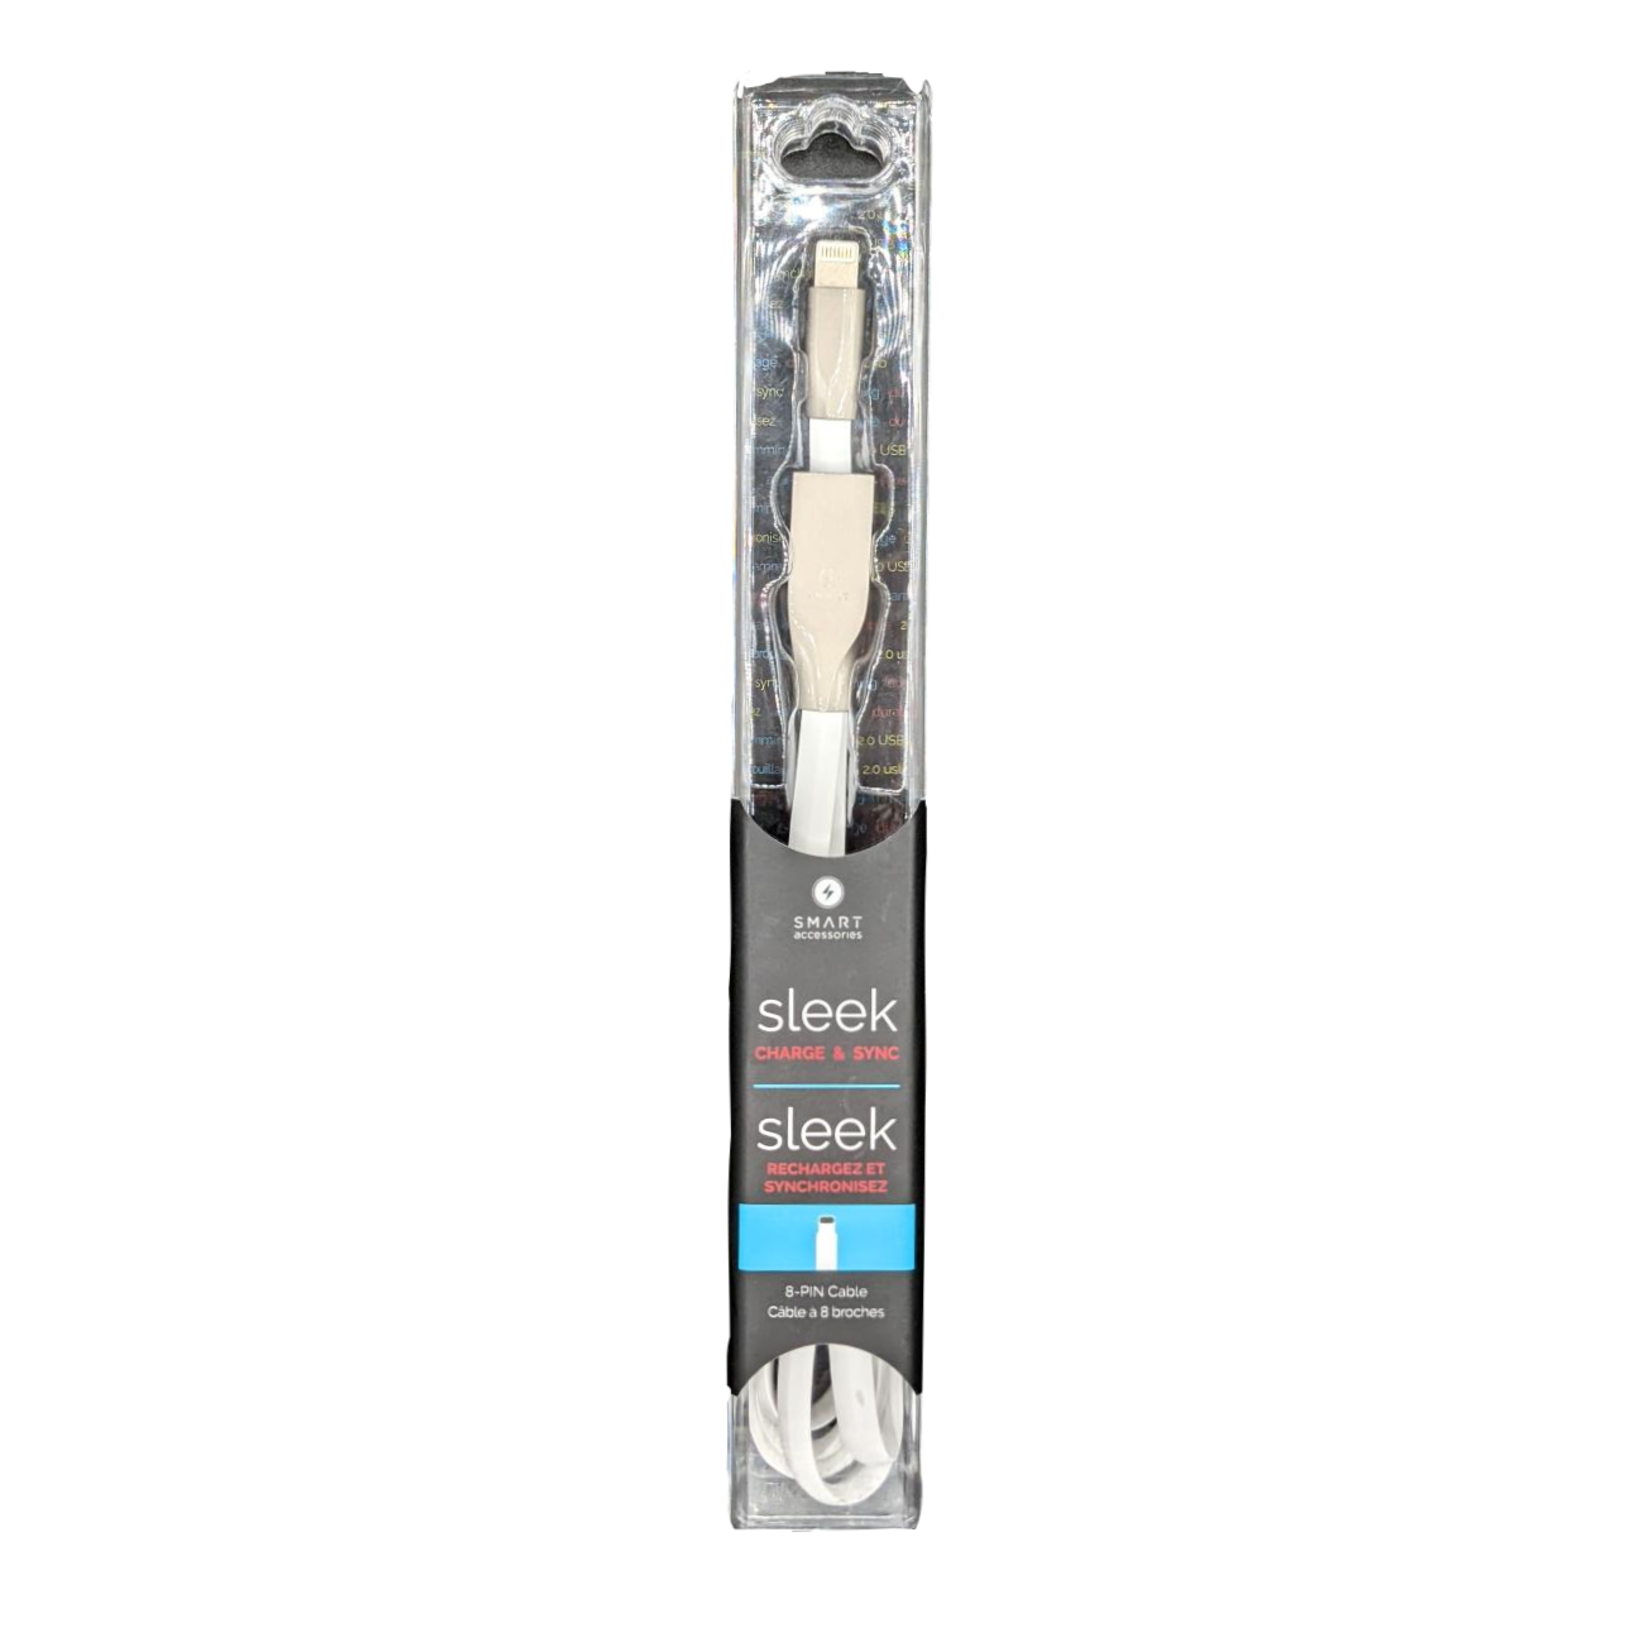 Sleek 8-Pin Metal Tip Cable